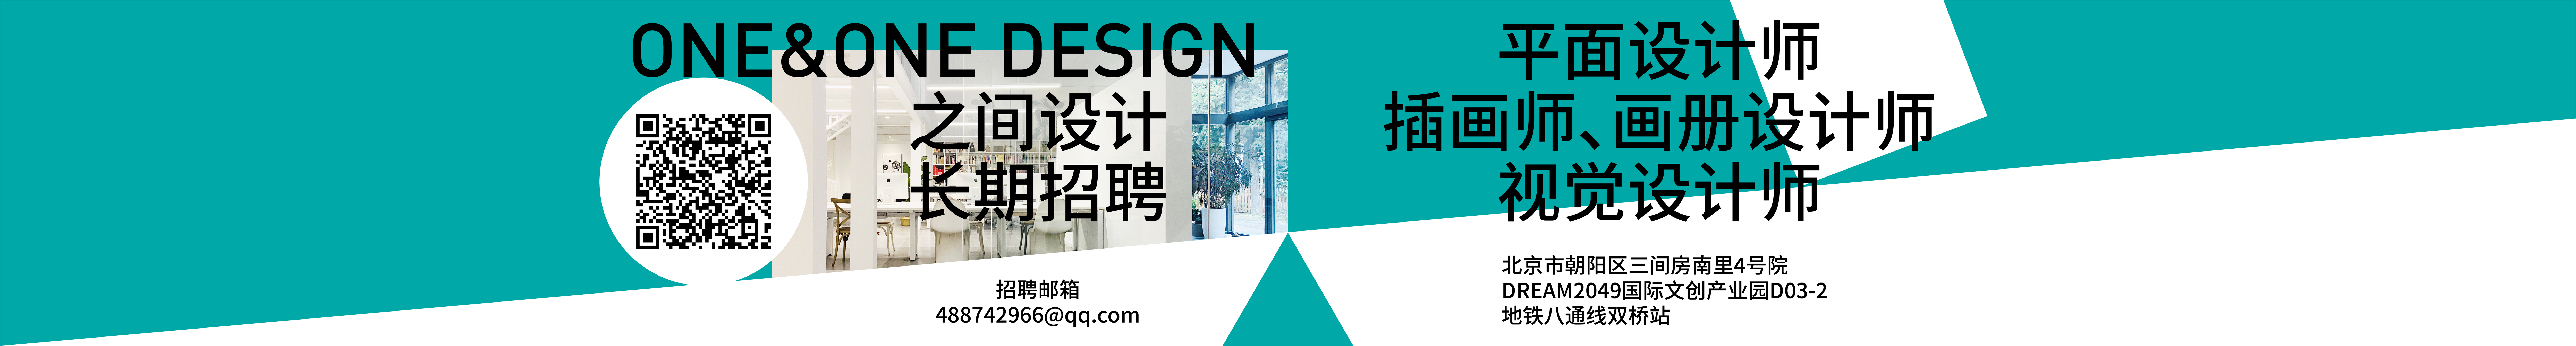 北京平面设计师之间设计的创作者主页